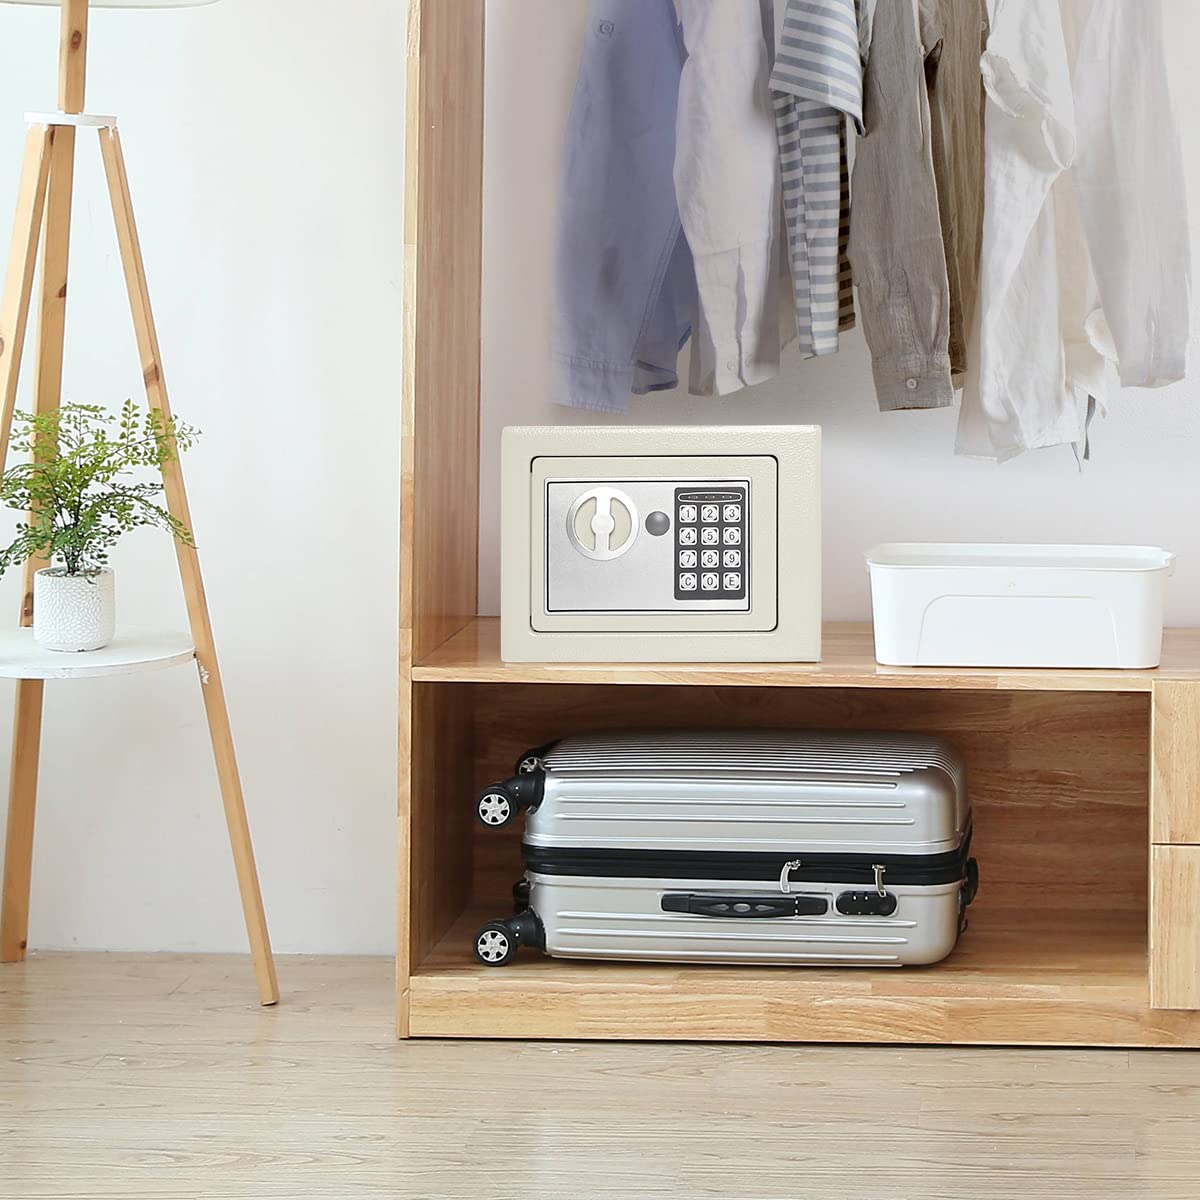 Kệ đựng đồ Jssmst Storage Cabinet sẽ giúp bạn tối ưu không gian nhà ở một cách thông minh. Thông qua bố cục tối ưu hóa, bạn sẽ tận dụng được không gian nhà mà không cần phải đâm hoặc khoan bất cứ điều gì. Hãy tìm hiểu thêm về sản phẩm tuyệt vời này bằng hình ảnh.